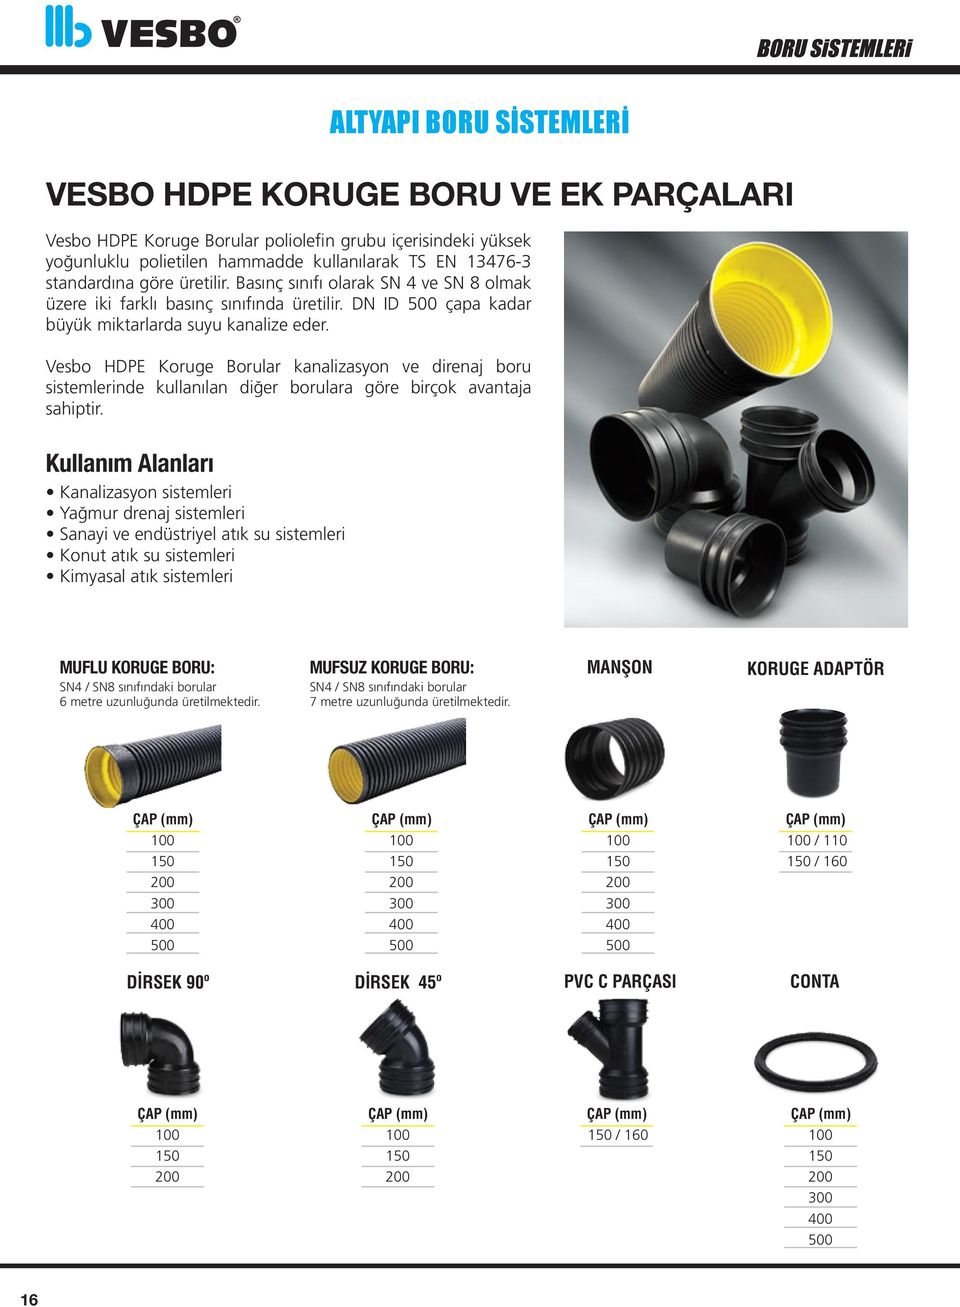 Vesbo HDPE Koruge Borular kanalizasyon ve direnaj boru sistemlerinde kullanılan diğer borulara göre birçok avantaja sahiptir.